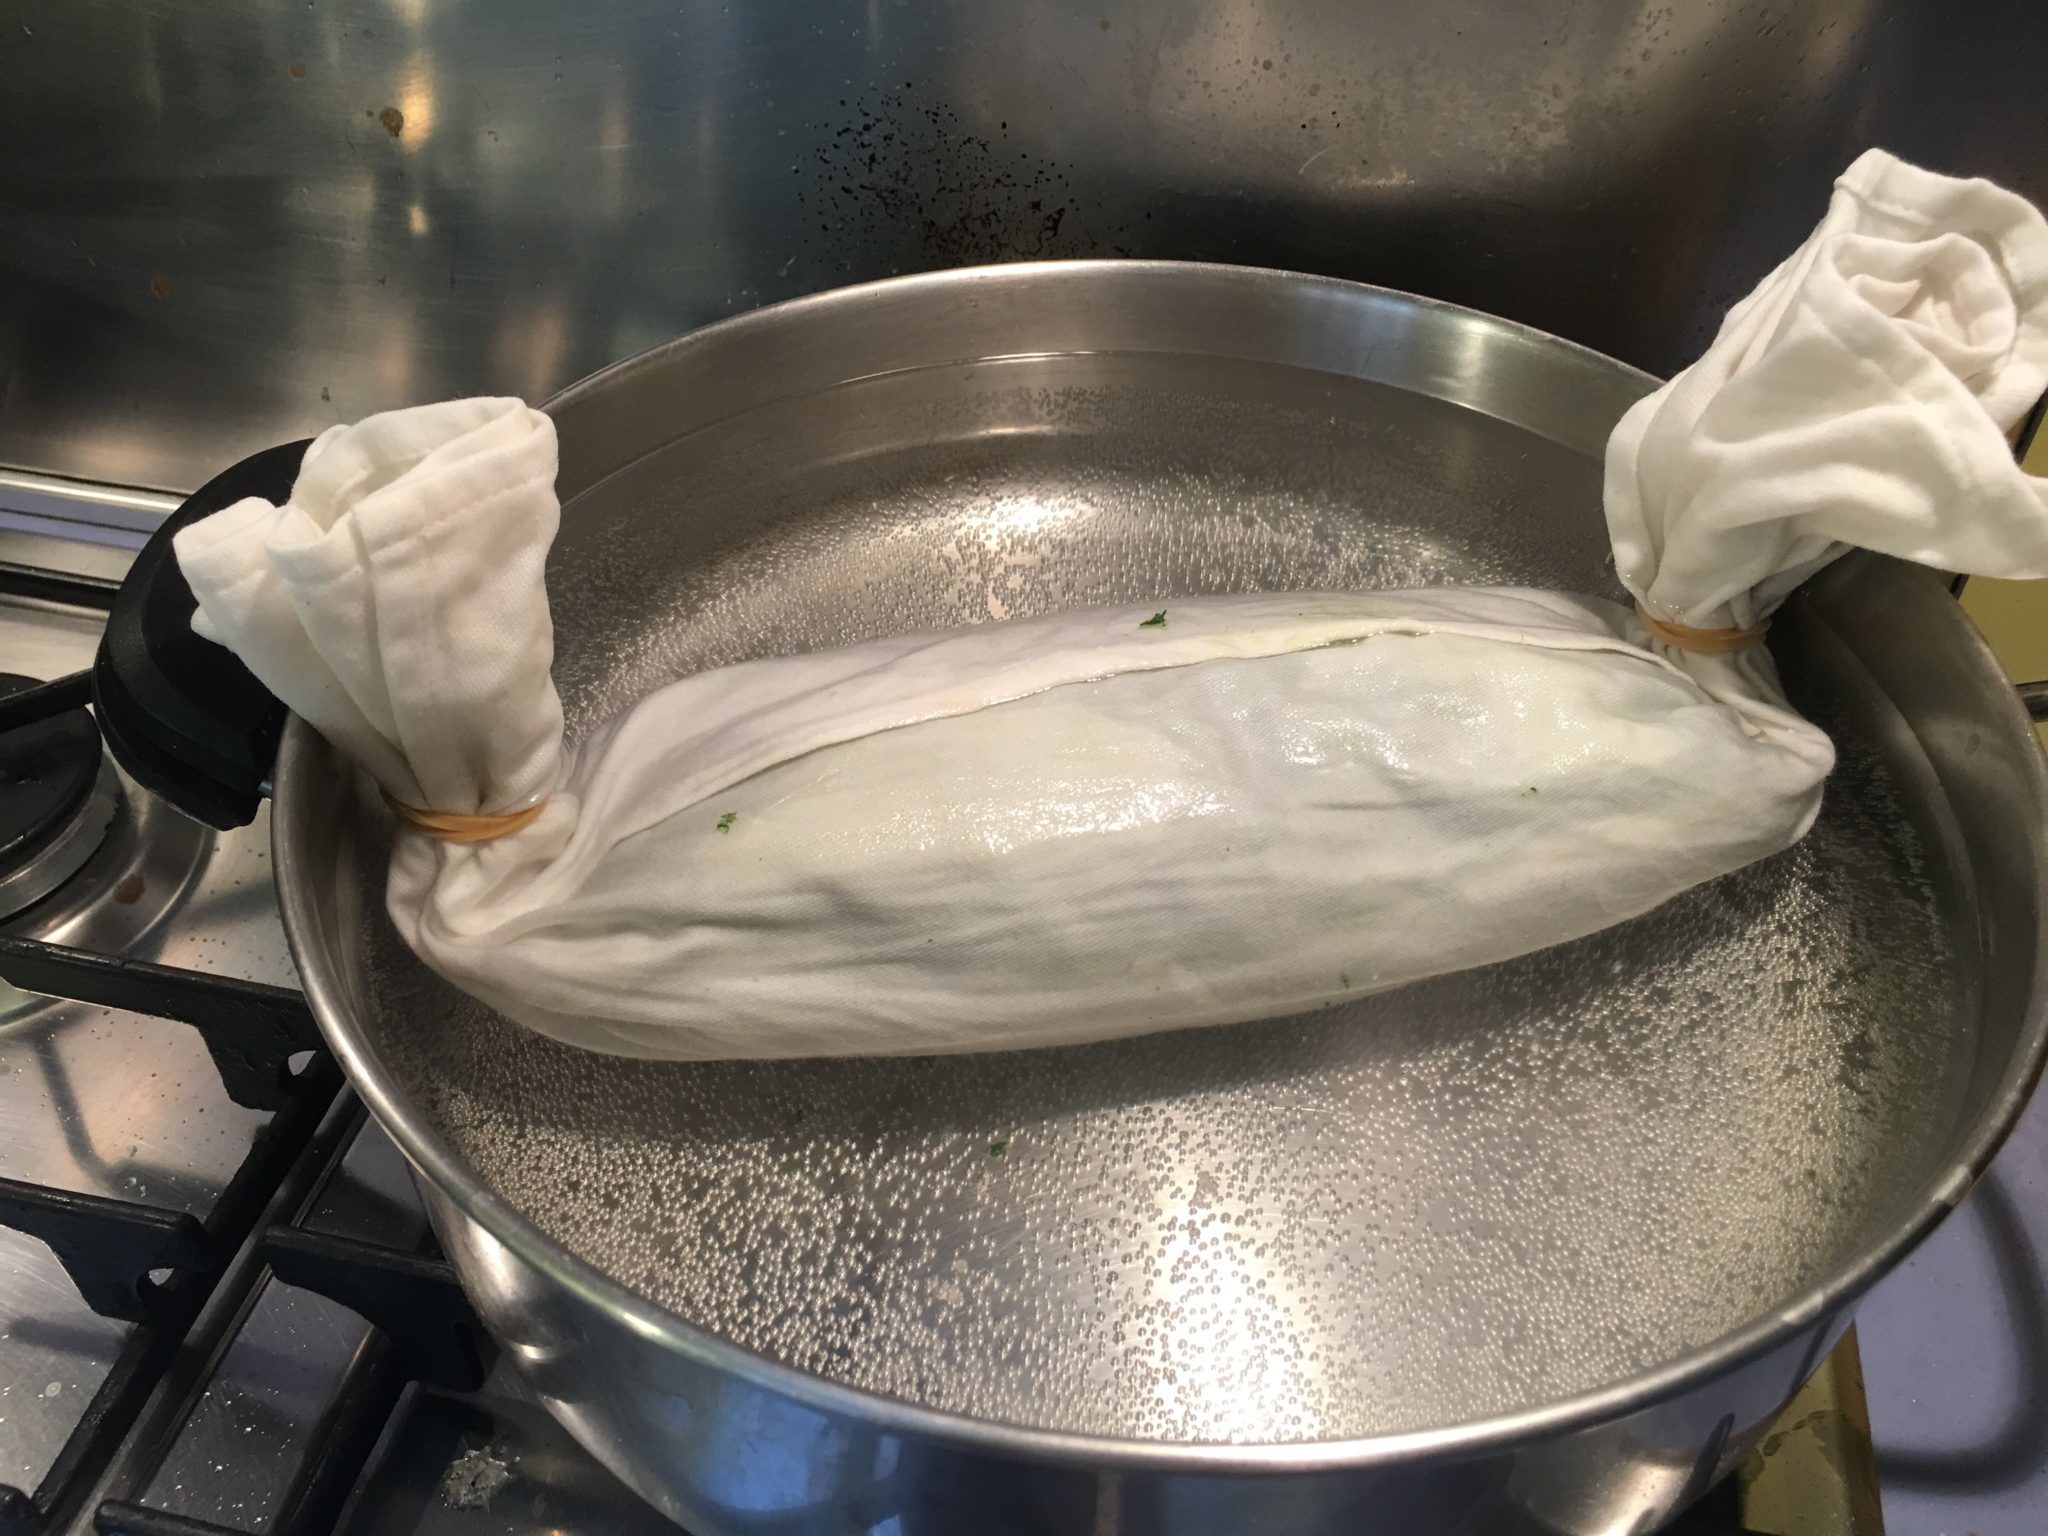 Polpettone di spinaci con crema al limone - in cottura nell'acqua bollente